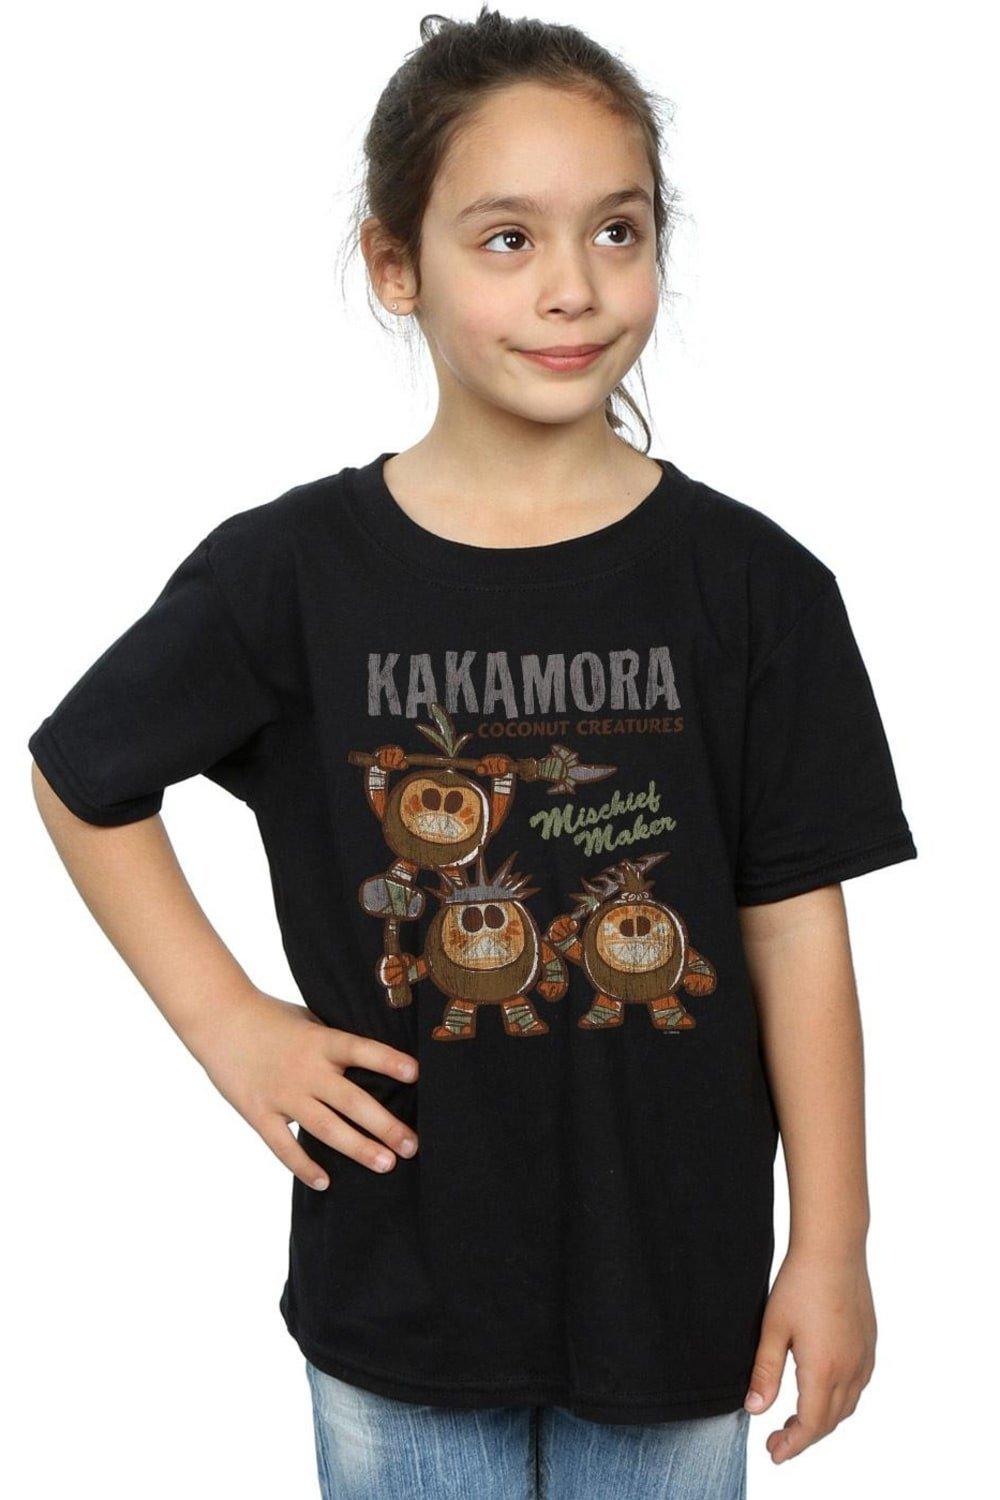 Хлопковая футболка «Моана Какамора» Disney, черный